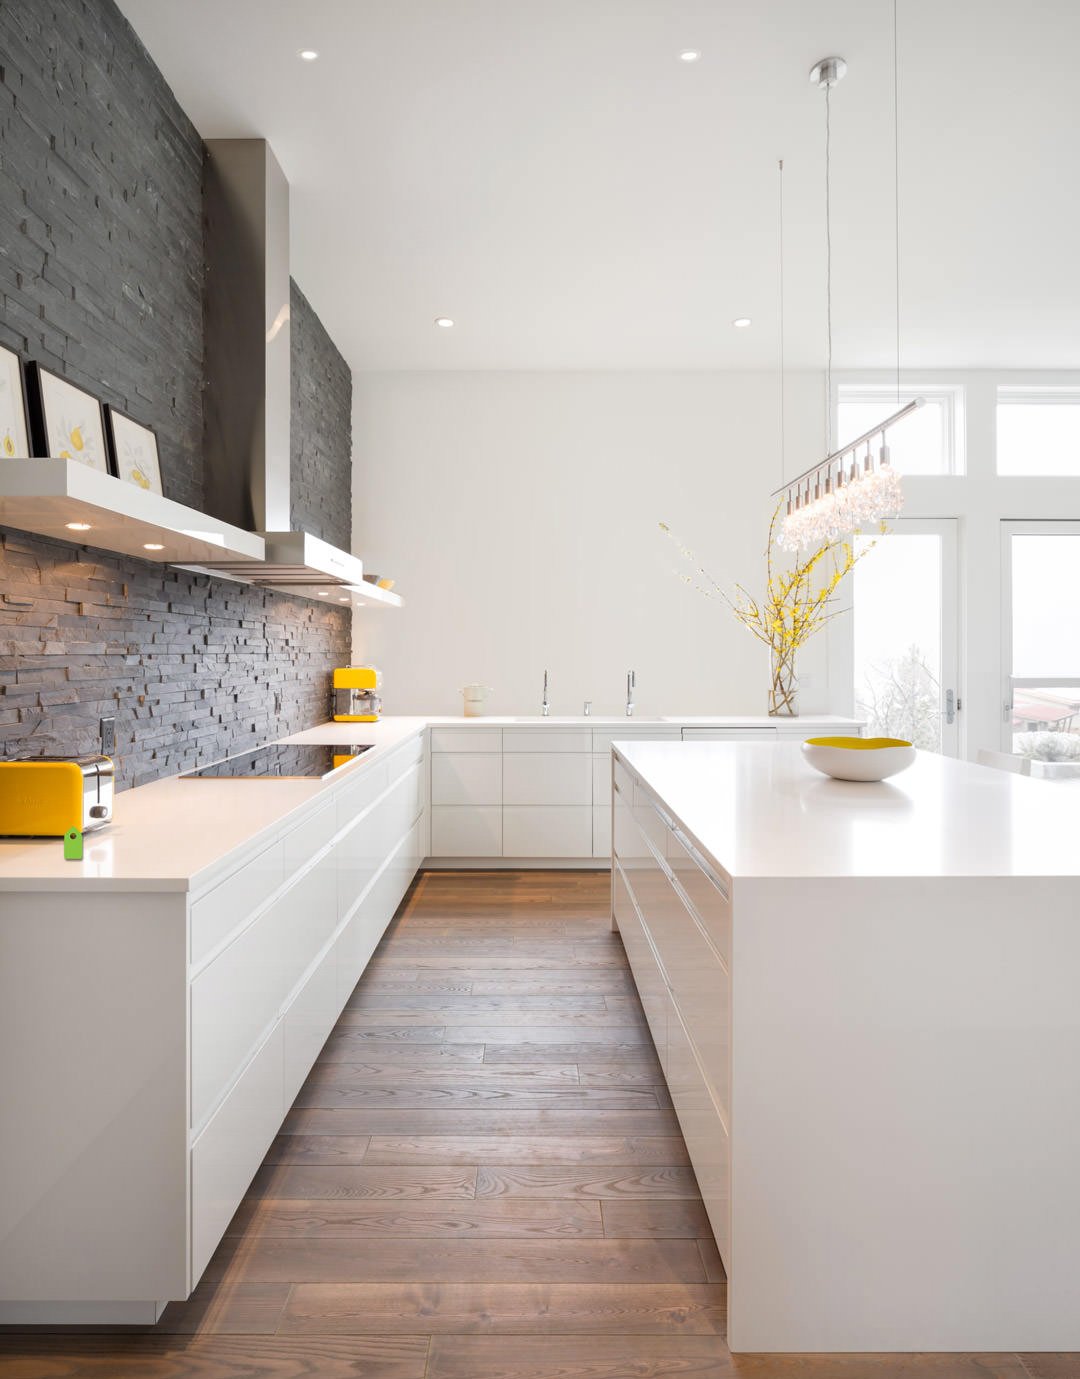 Cucina con muro in mattoni scuri perfettamente abbinato ai mobili bianco lucido e al pavimento in massello - Idee cucine moderne